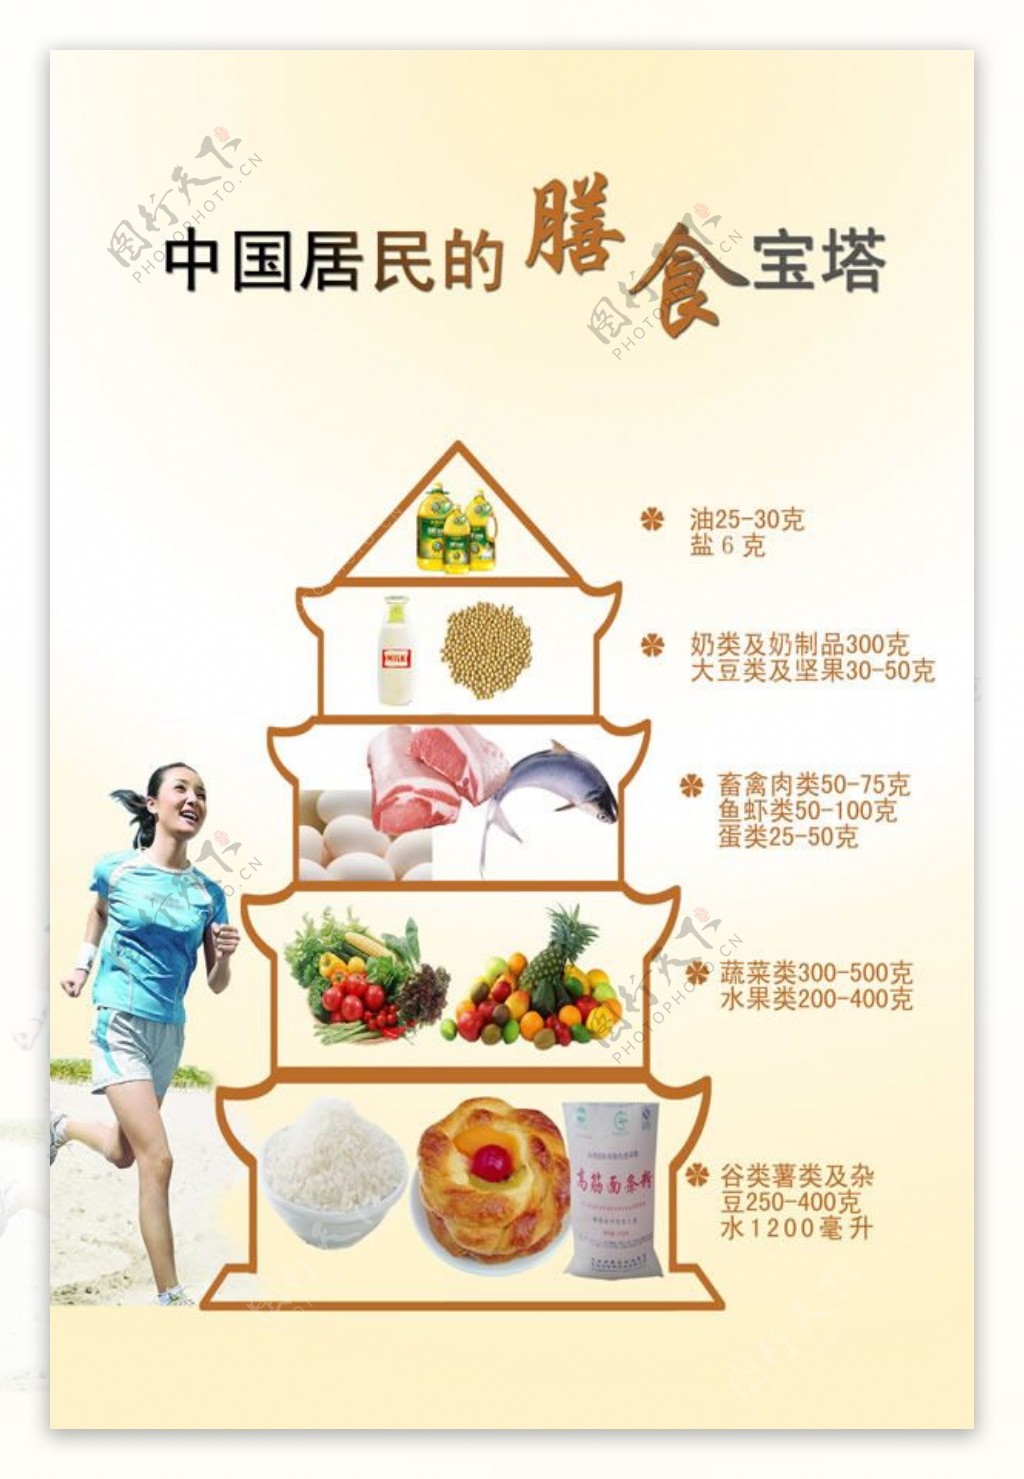 中国居民膳食宝塔图素材